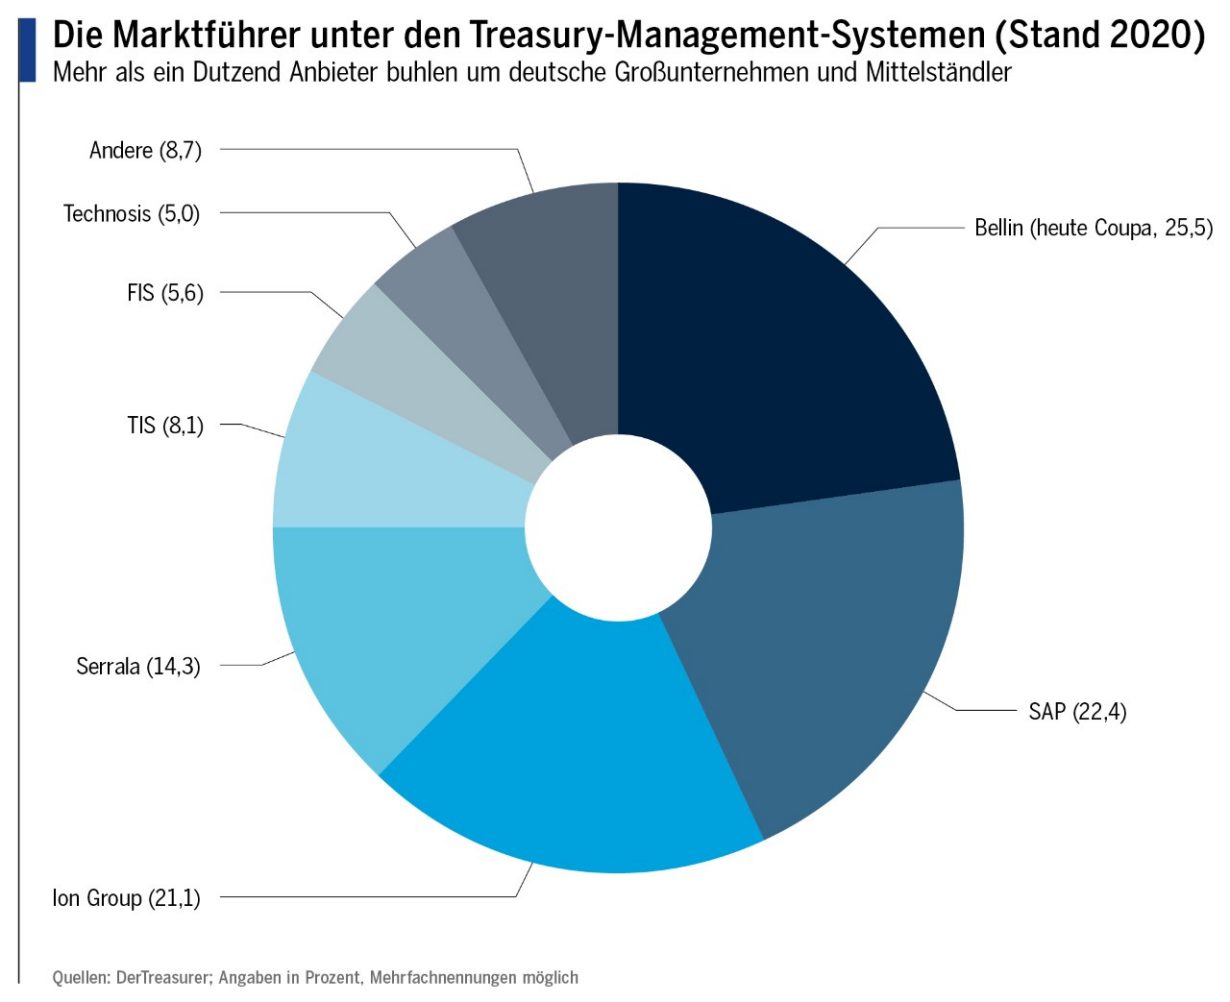 Die Marktführer unter den Treasury-Management-Systemen